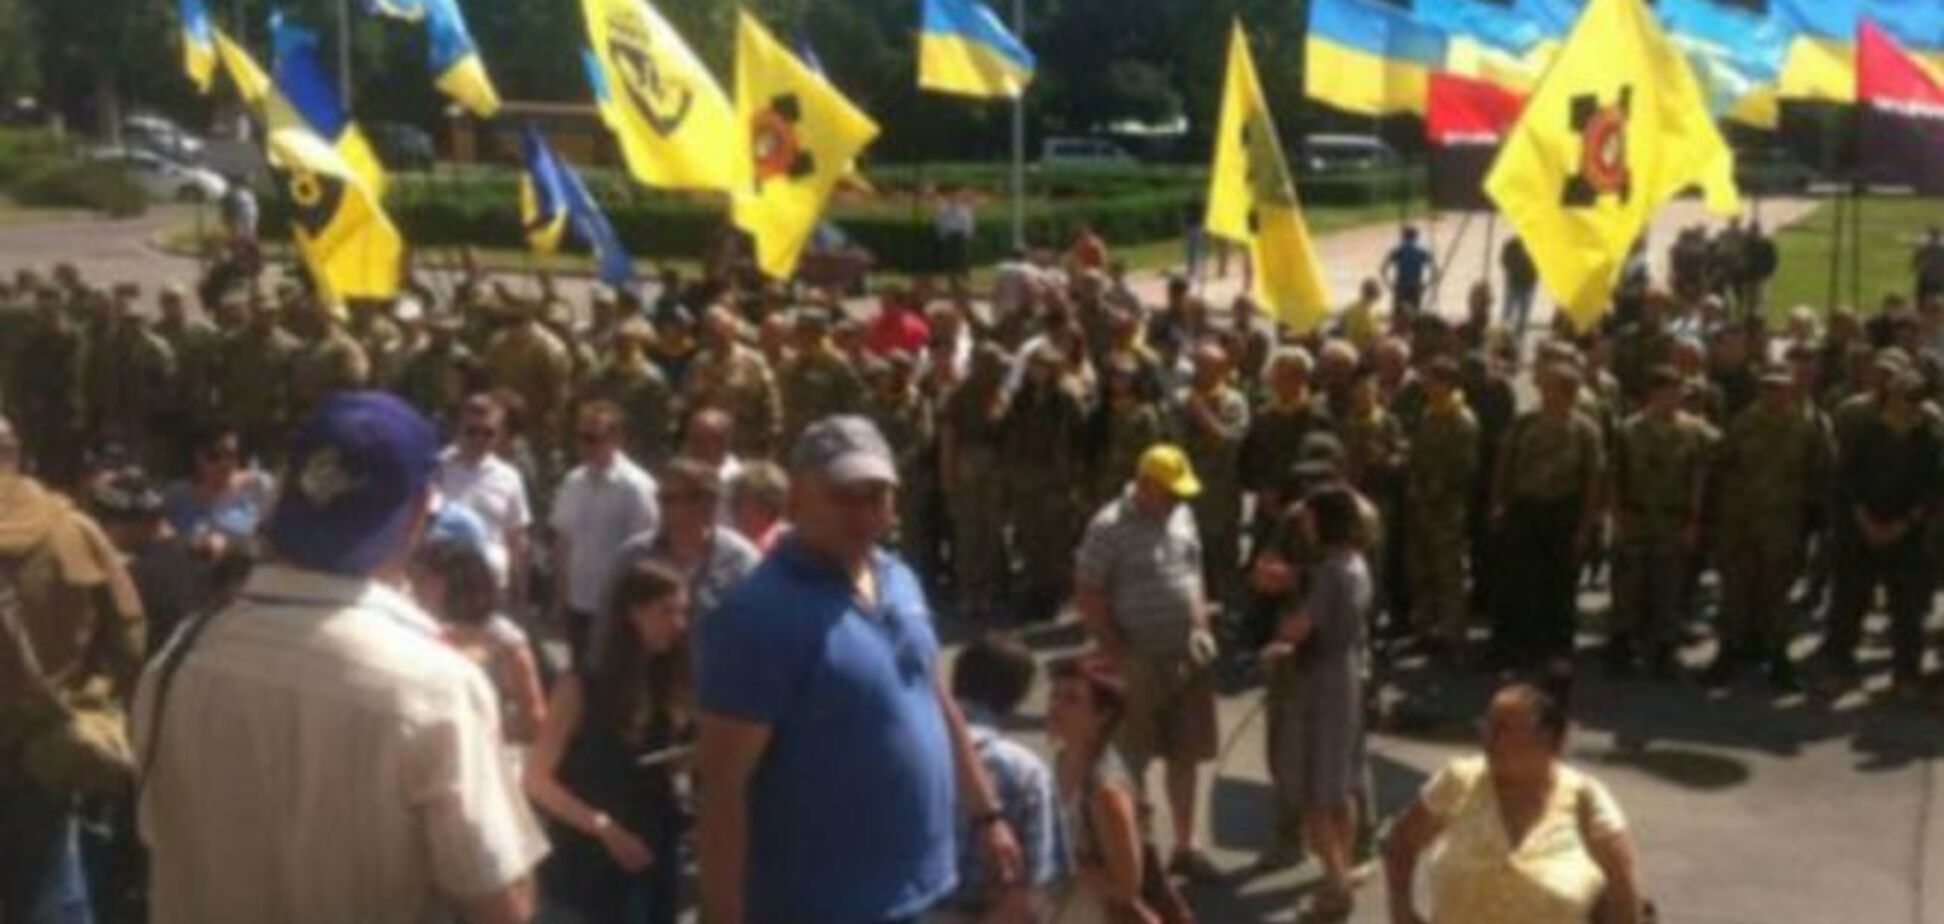 Наладить диалог: перед зданием ОГА в Одессе собралось 200 активистов